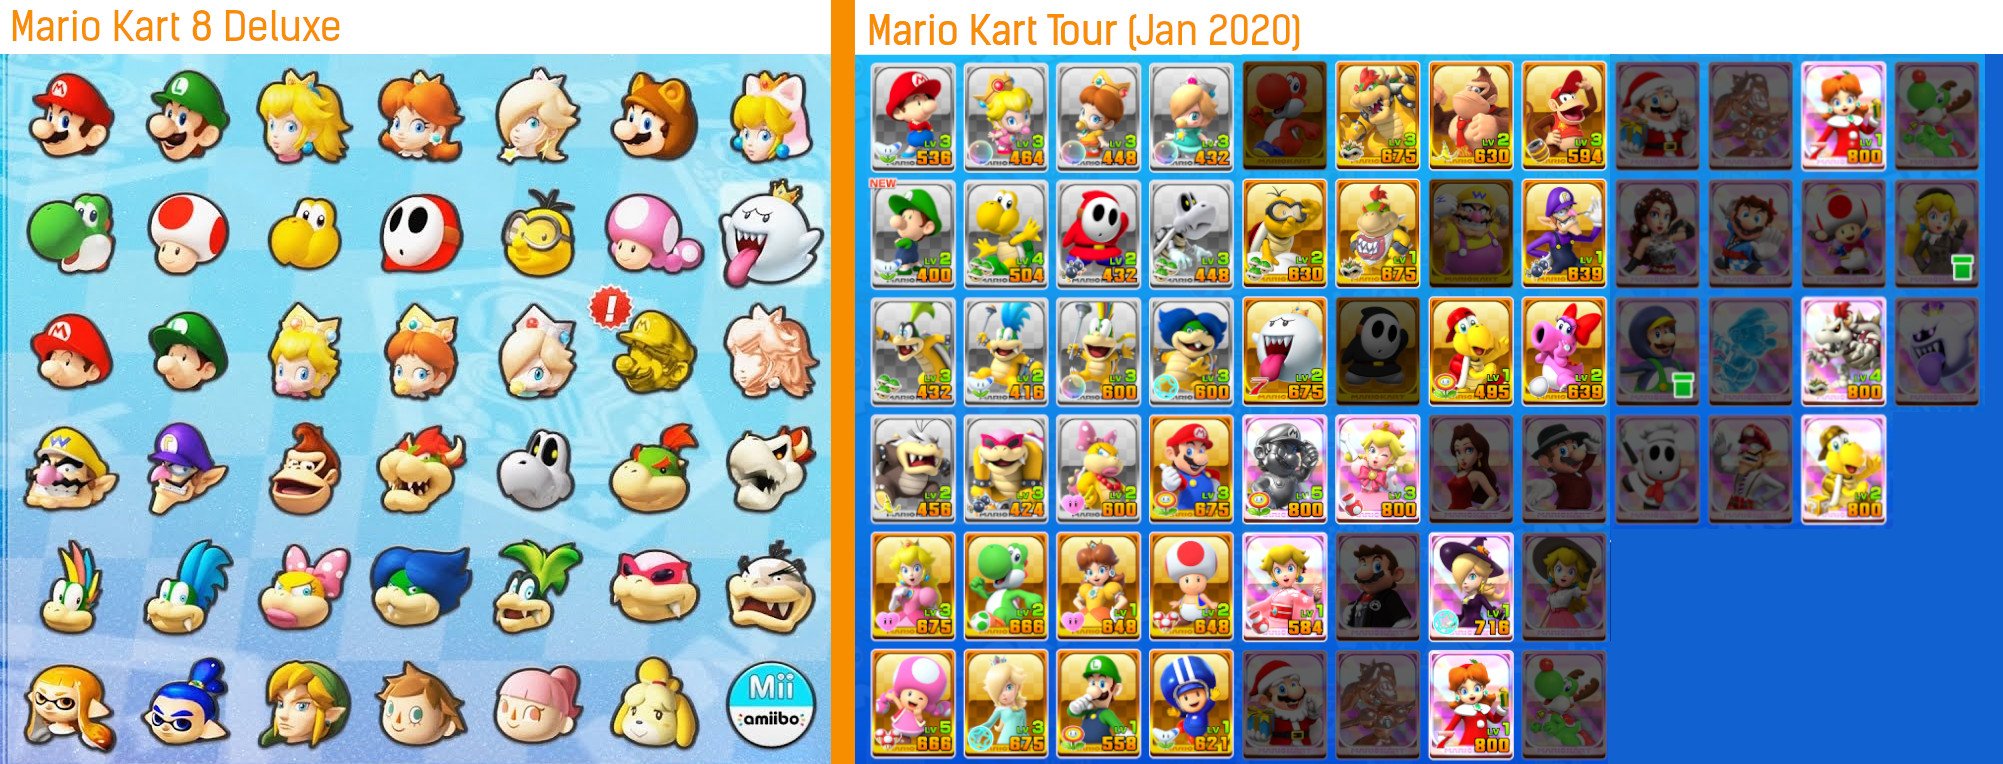 Componist in plaats daarvan belangrijk Mario Kart Tour now has as many available characters as 8 Deluxe | VGC